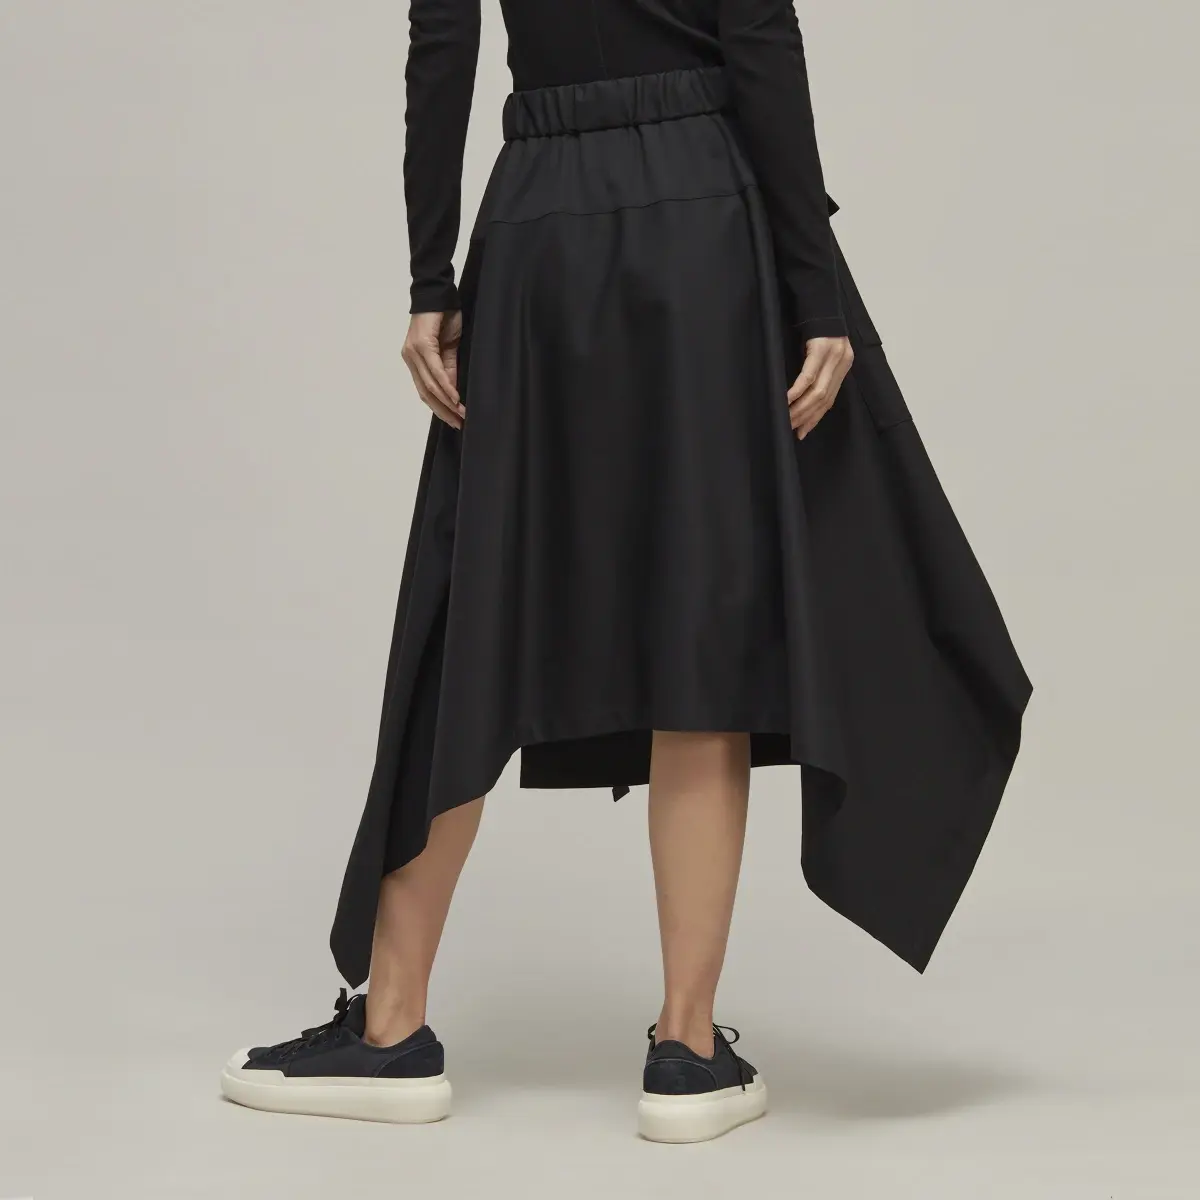 Adidas Y-3 Refined Wool Skirt. 3